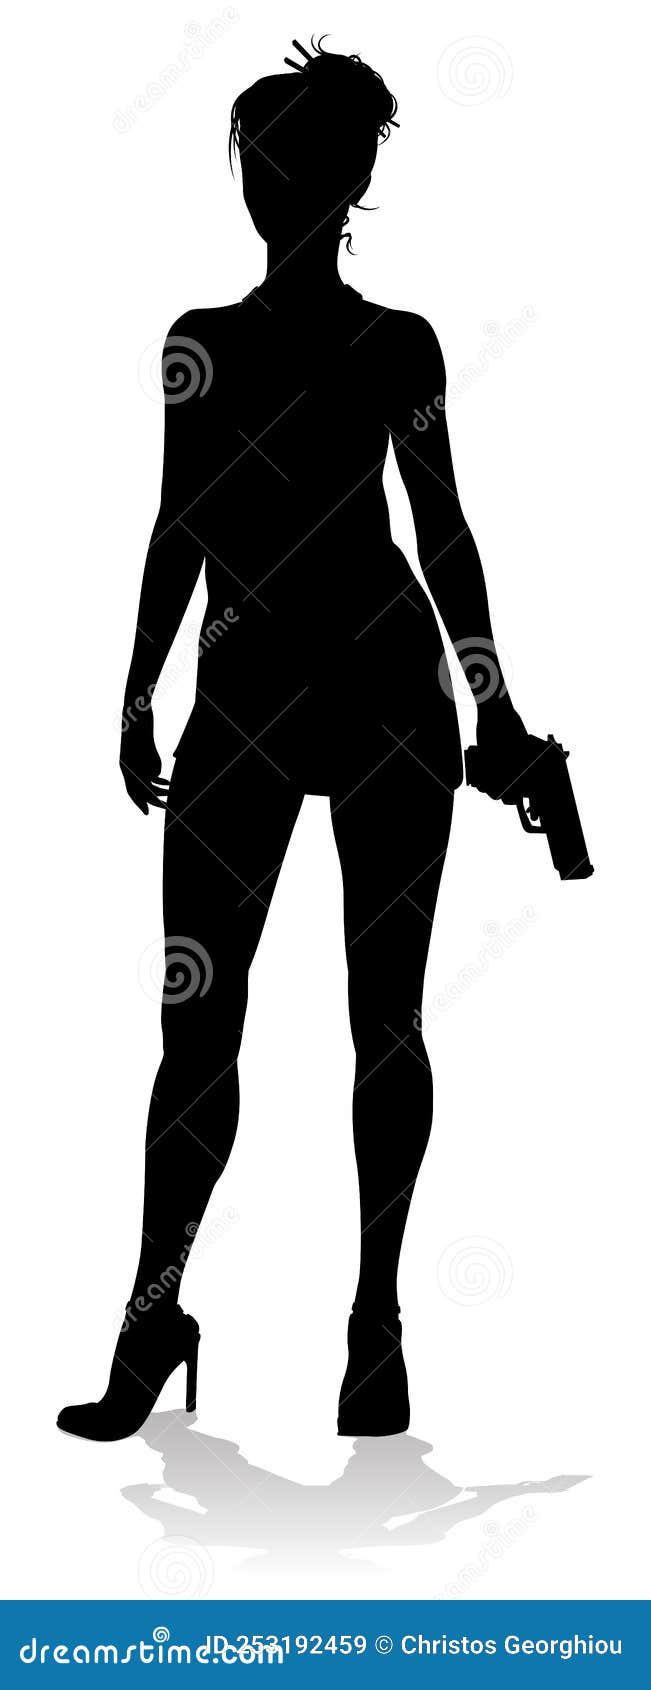 https://thumbs.dreamstime.com/z/woman-gun-silhouette-detective-secret-agent-spy-action-hero-female-movie-star-woman-silhouette-hitman-spy-secret-253192459.jpg